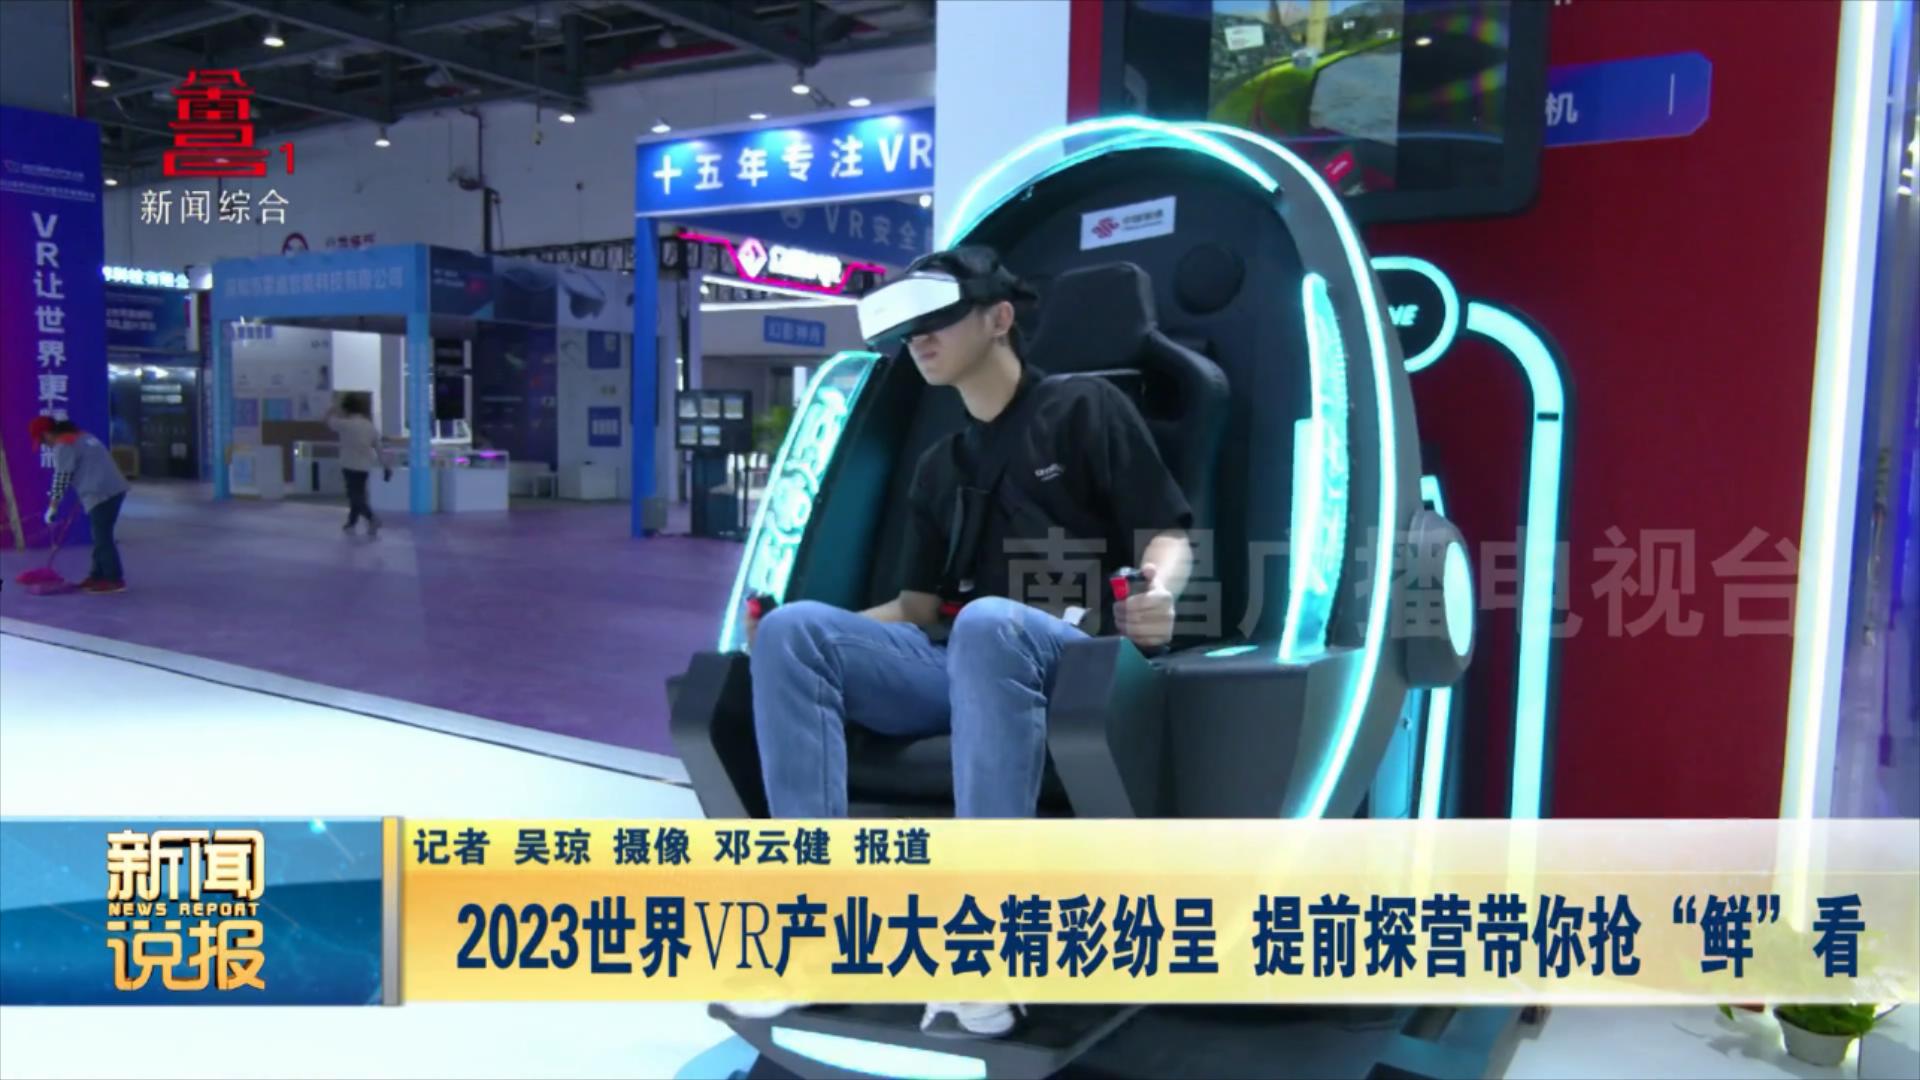 2023世界VR产业大会精彩纷呈 提前探营带你抢“鲜”看